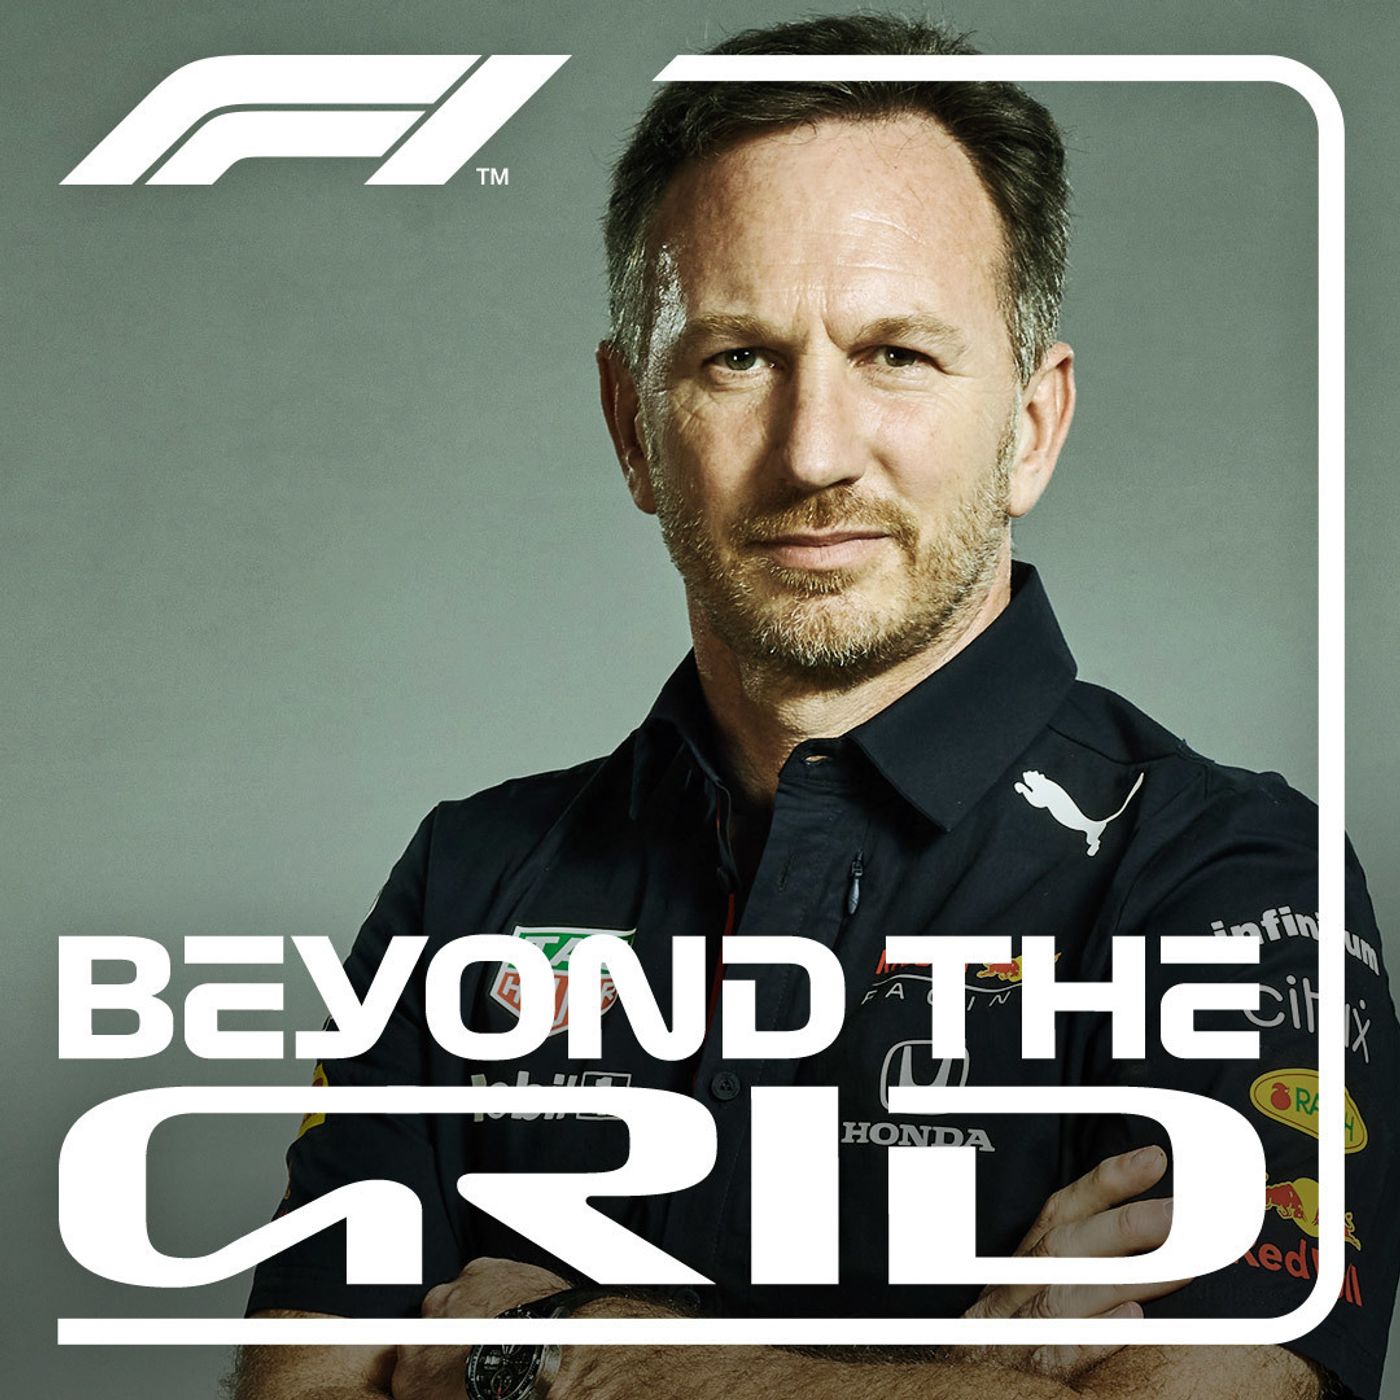 Christian Horner on Verstappen’s 2021, Red Bull’s ambitions and Vettel v Webber